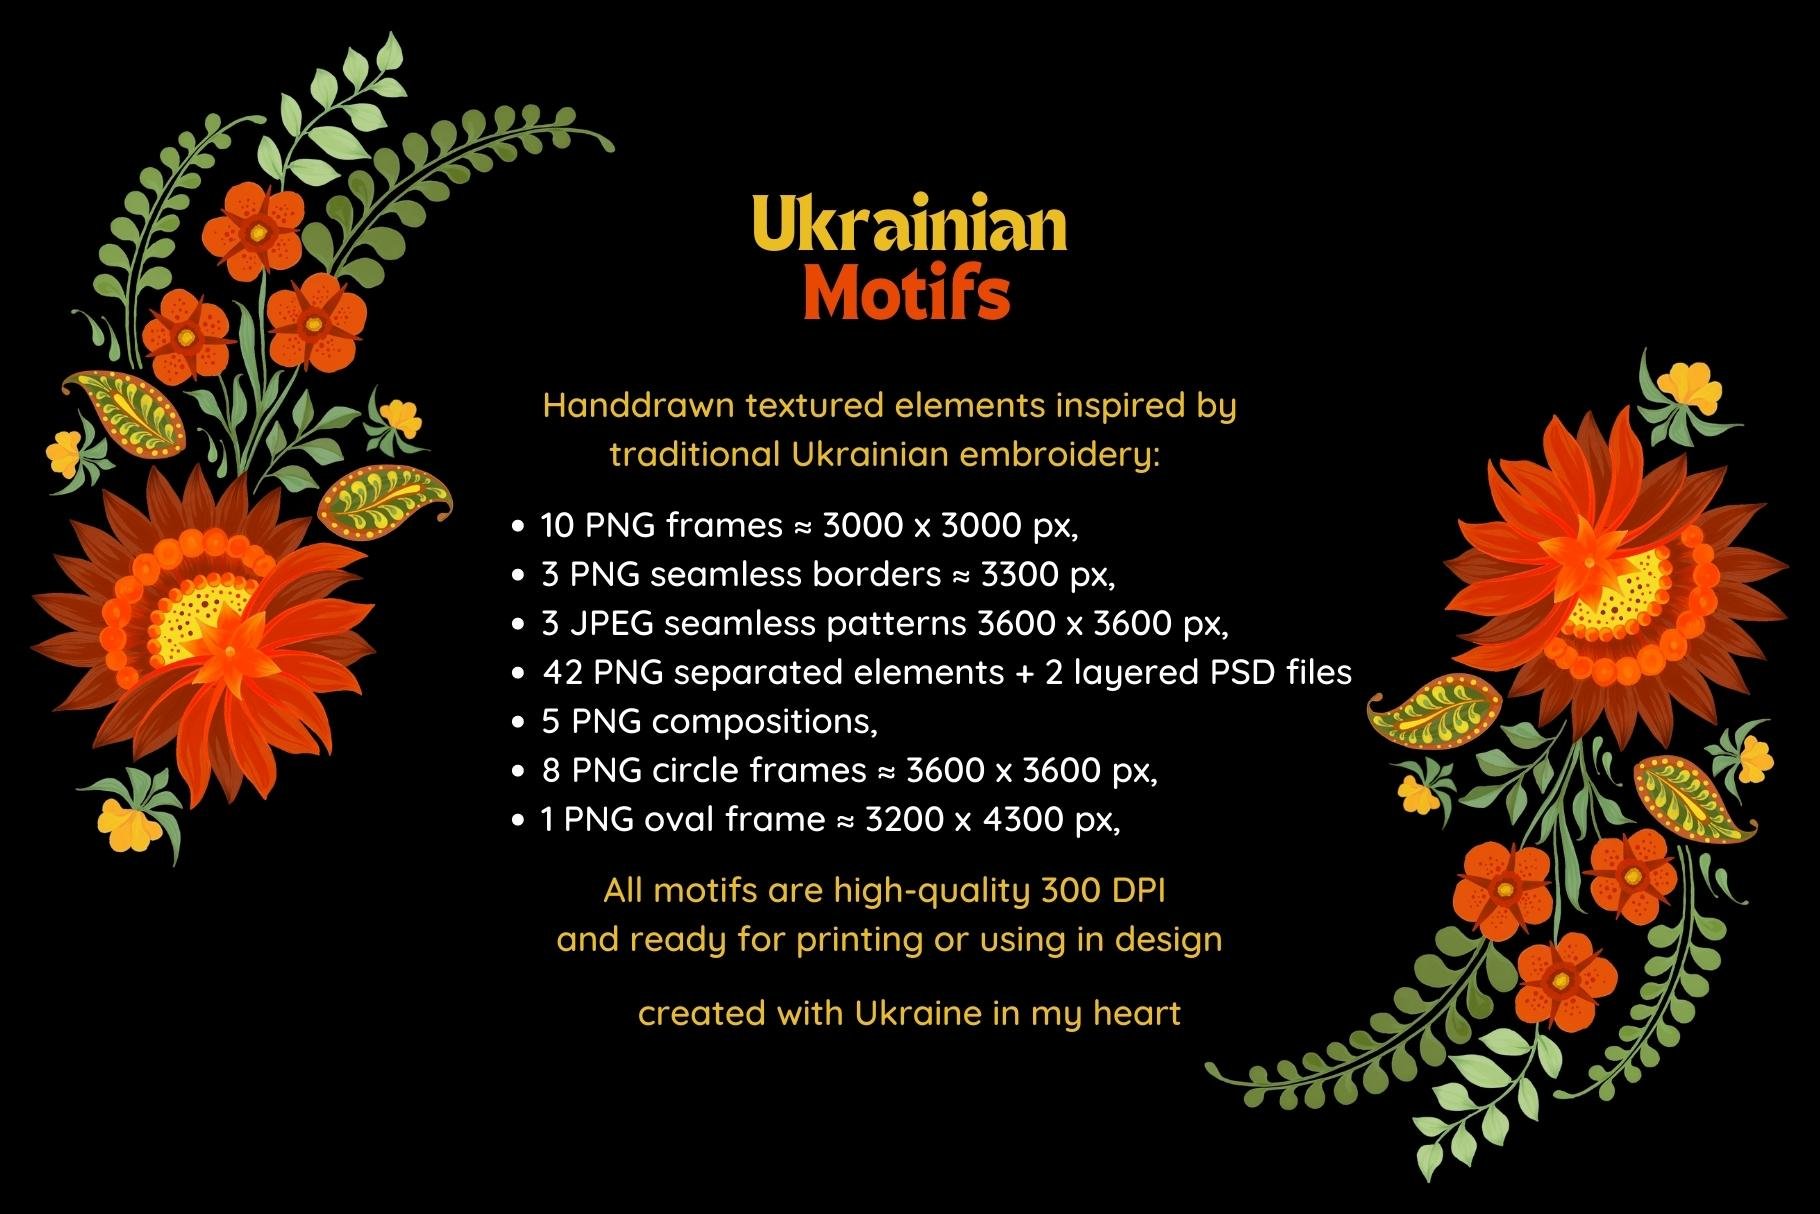 Ukrainian Motifs preview image.